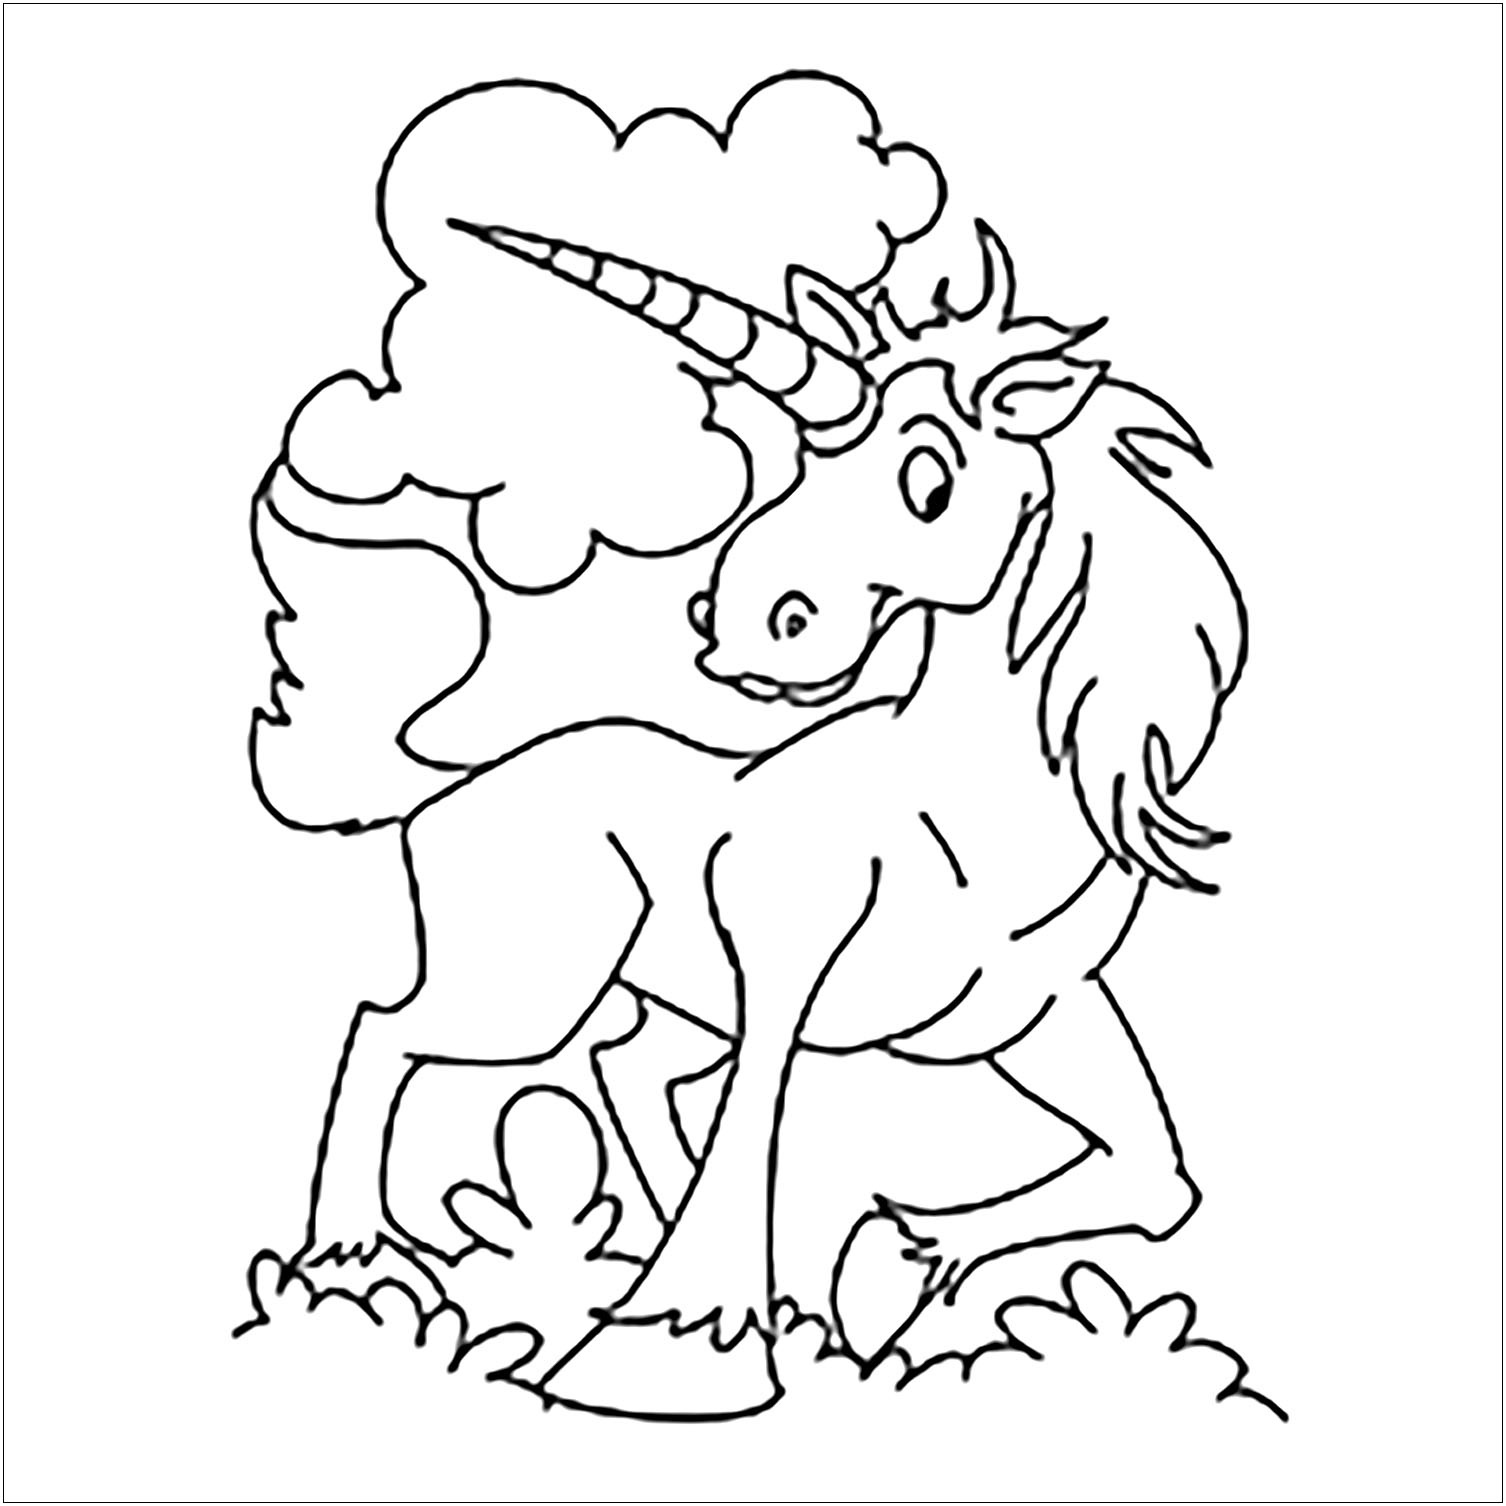 Página para colorear de un unicornio